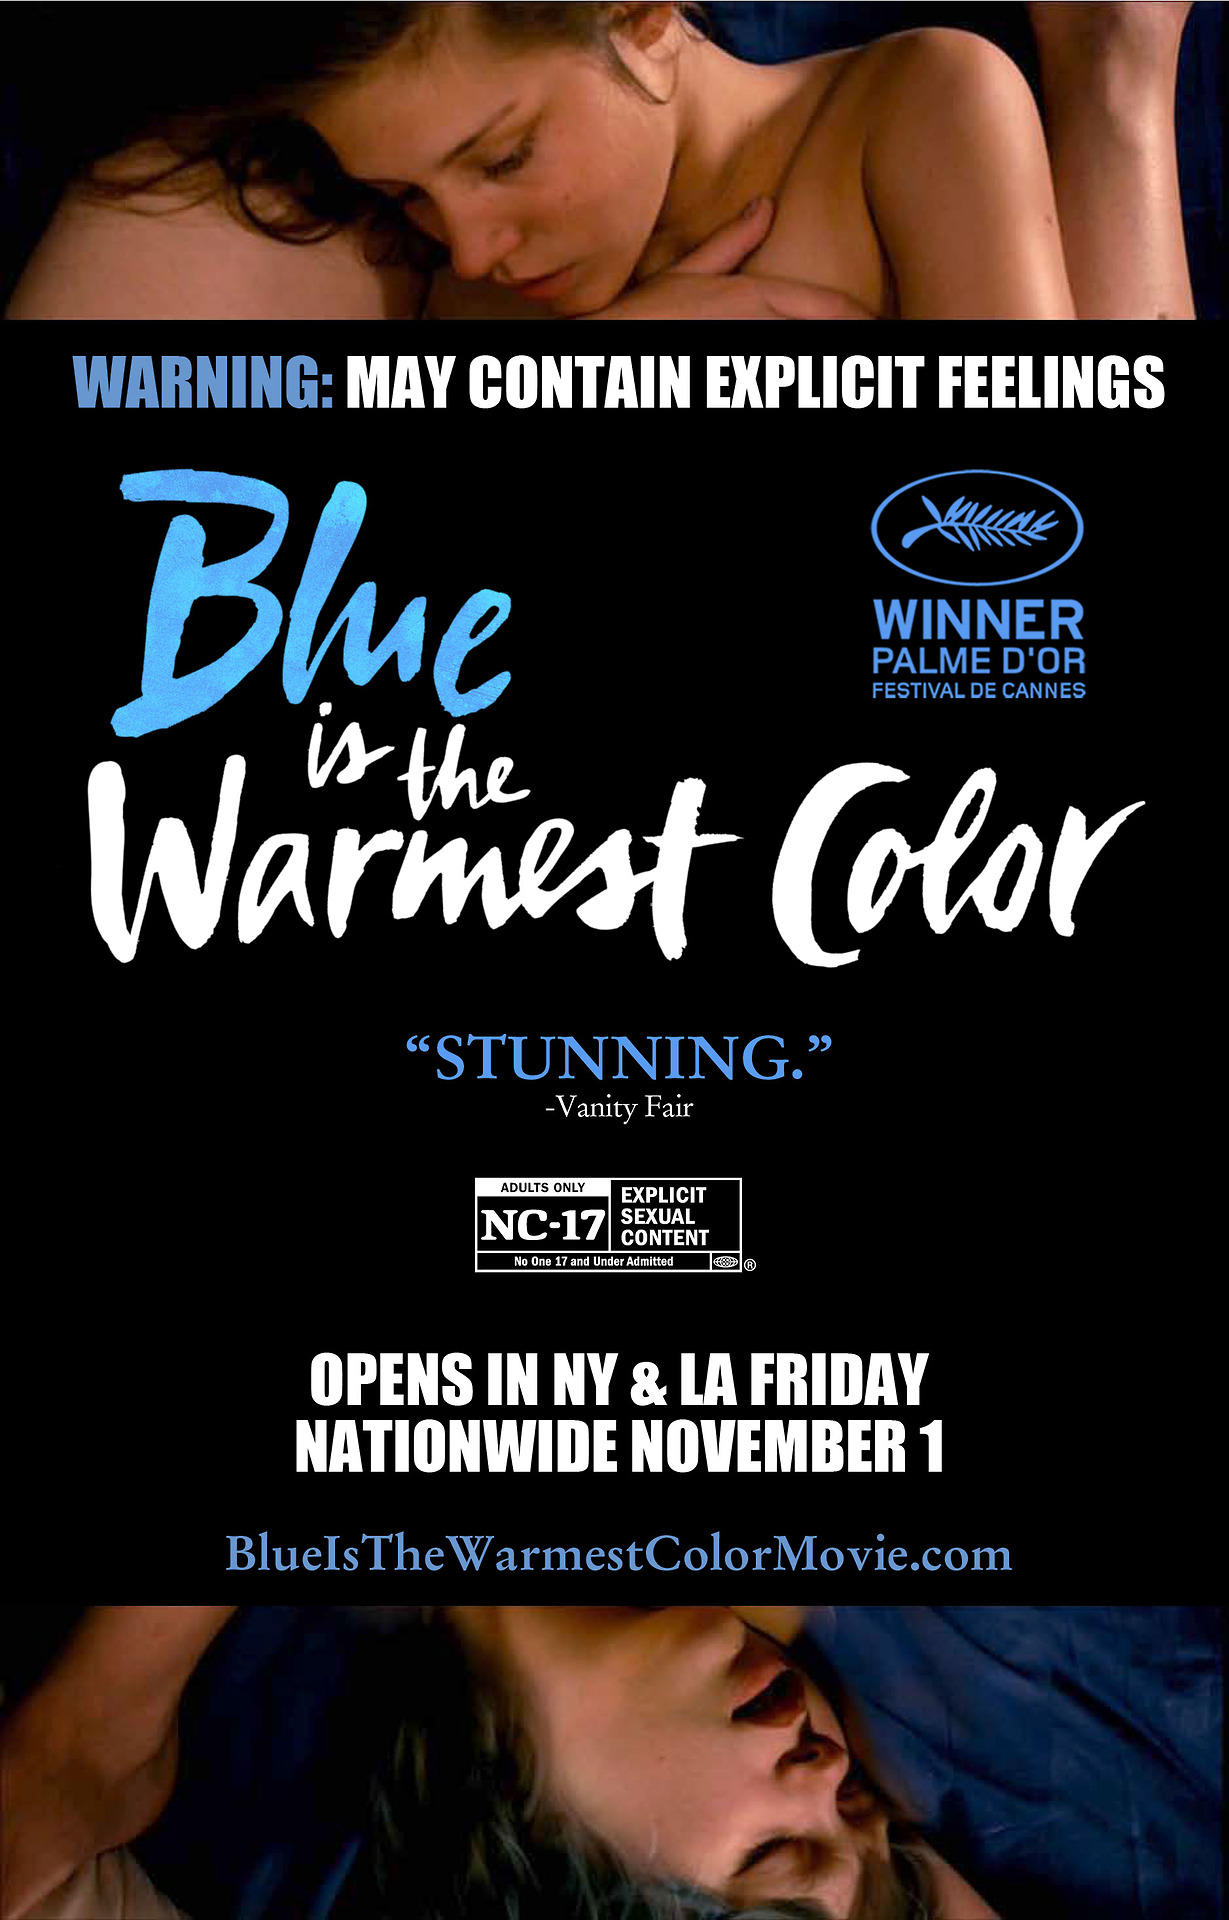 阿黛尔的生活 蓝光原盘下载+高清MKV版/阿黛尔的人生/蓝色是一种暖色调/接近无限温暖的蓝/蓝色是最温暖的颜色/火热蓝色/Blue Is the Warmest Color[蓝光原盘+MKV]44G